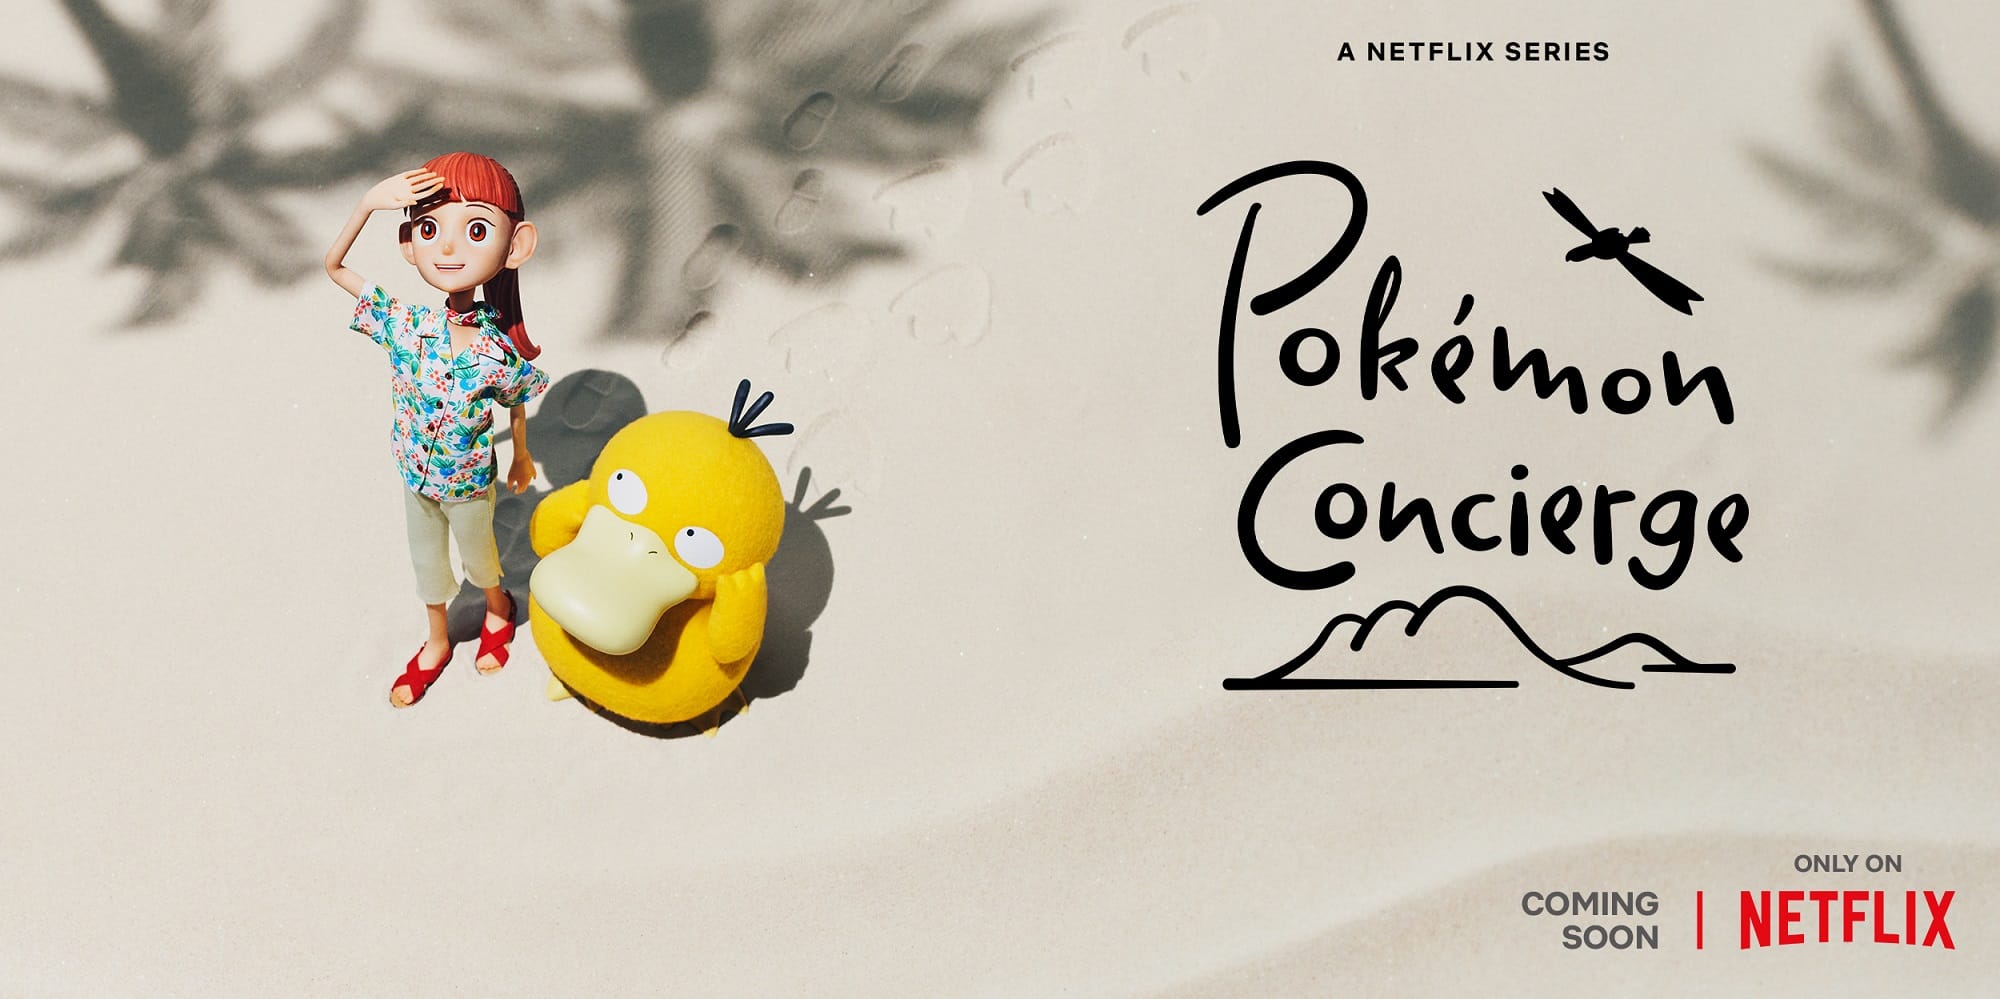 Το Netflix ετοιμάζει σειρά Pokemon